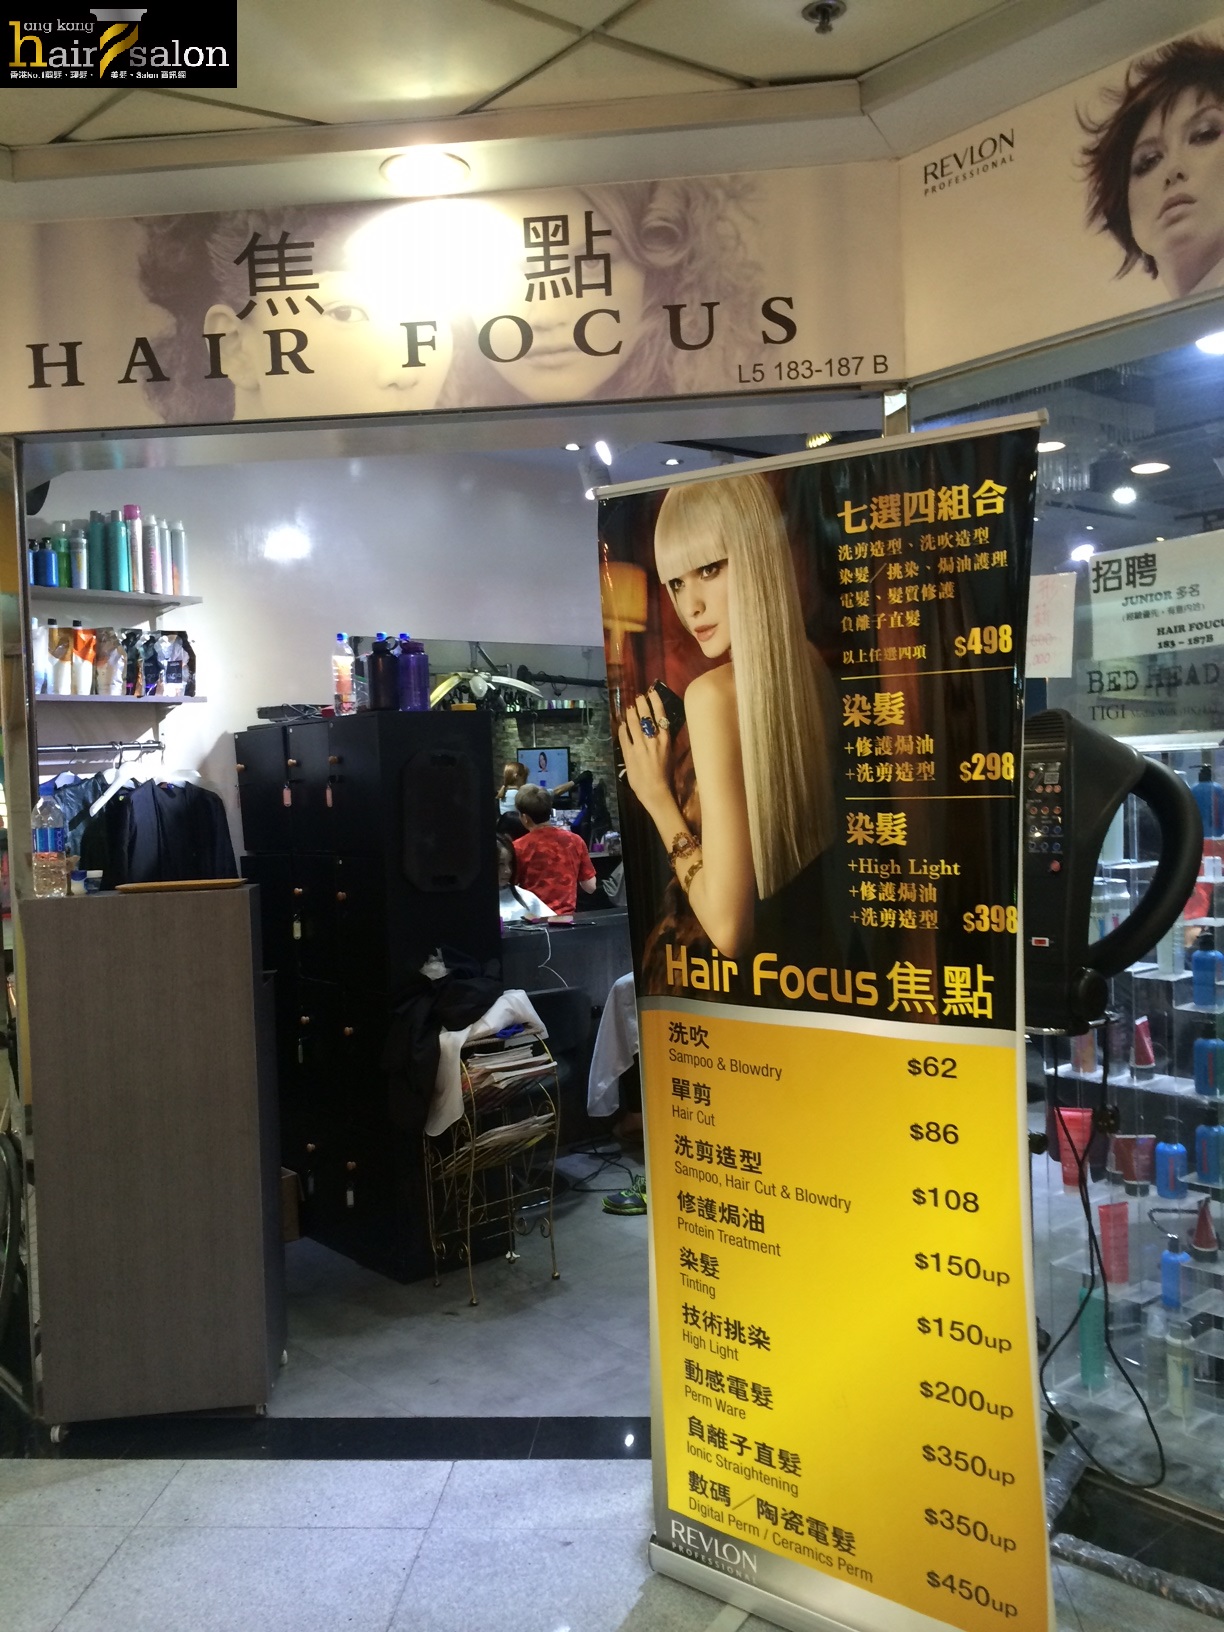 香港美髮網 HK Hair Salon 髮型屋Salon / 髮型師: 焦點 Hair Focus